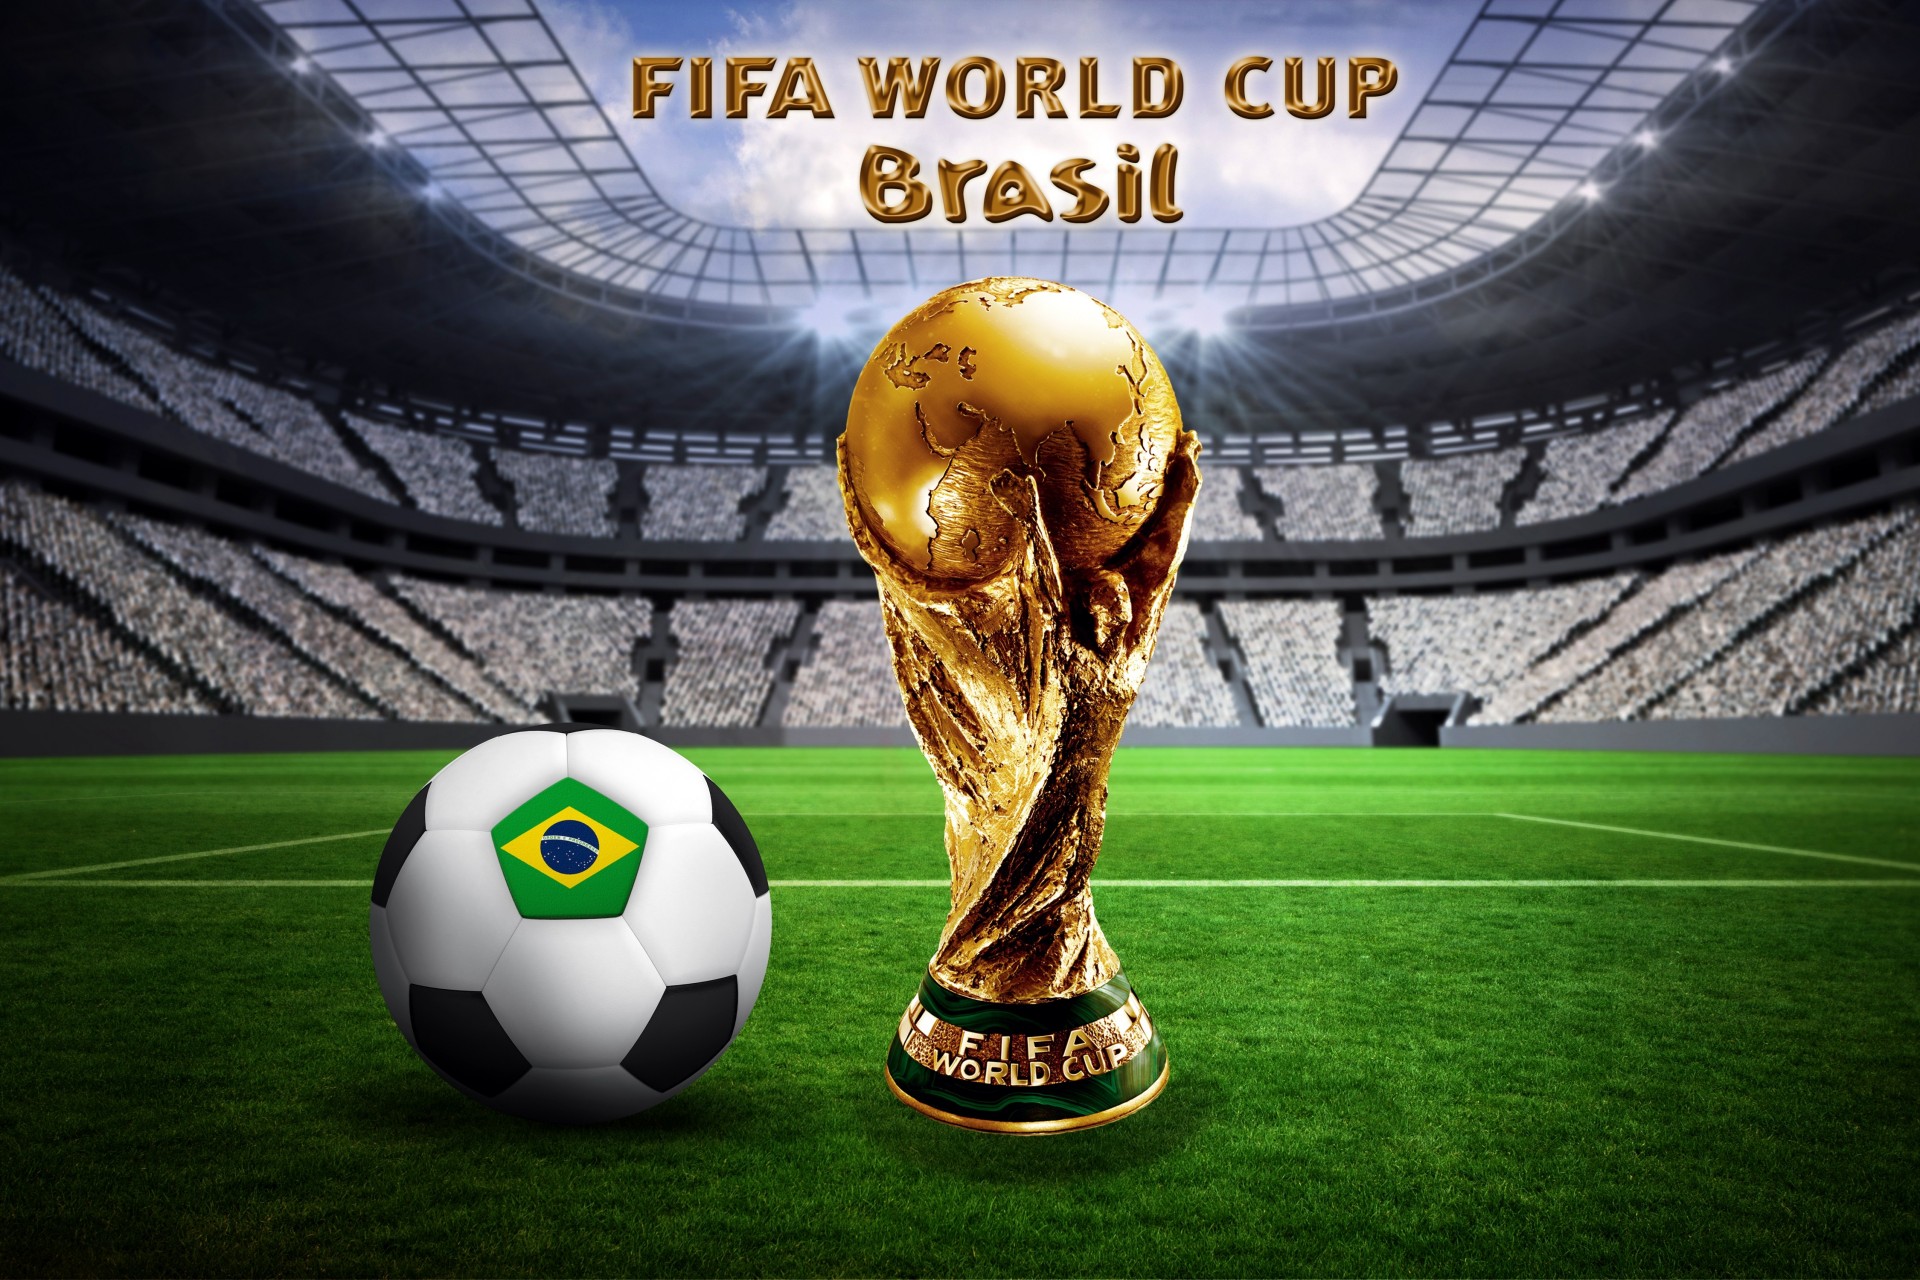 кубок мира шар стадион флаг футбол фифа 2014 бразилия